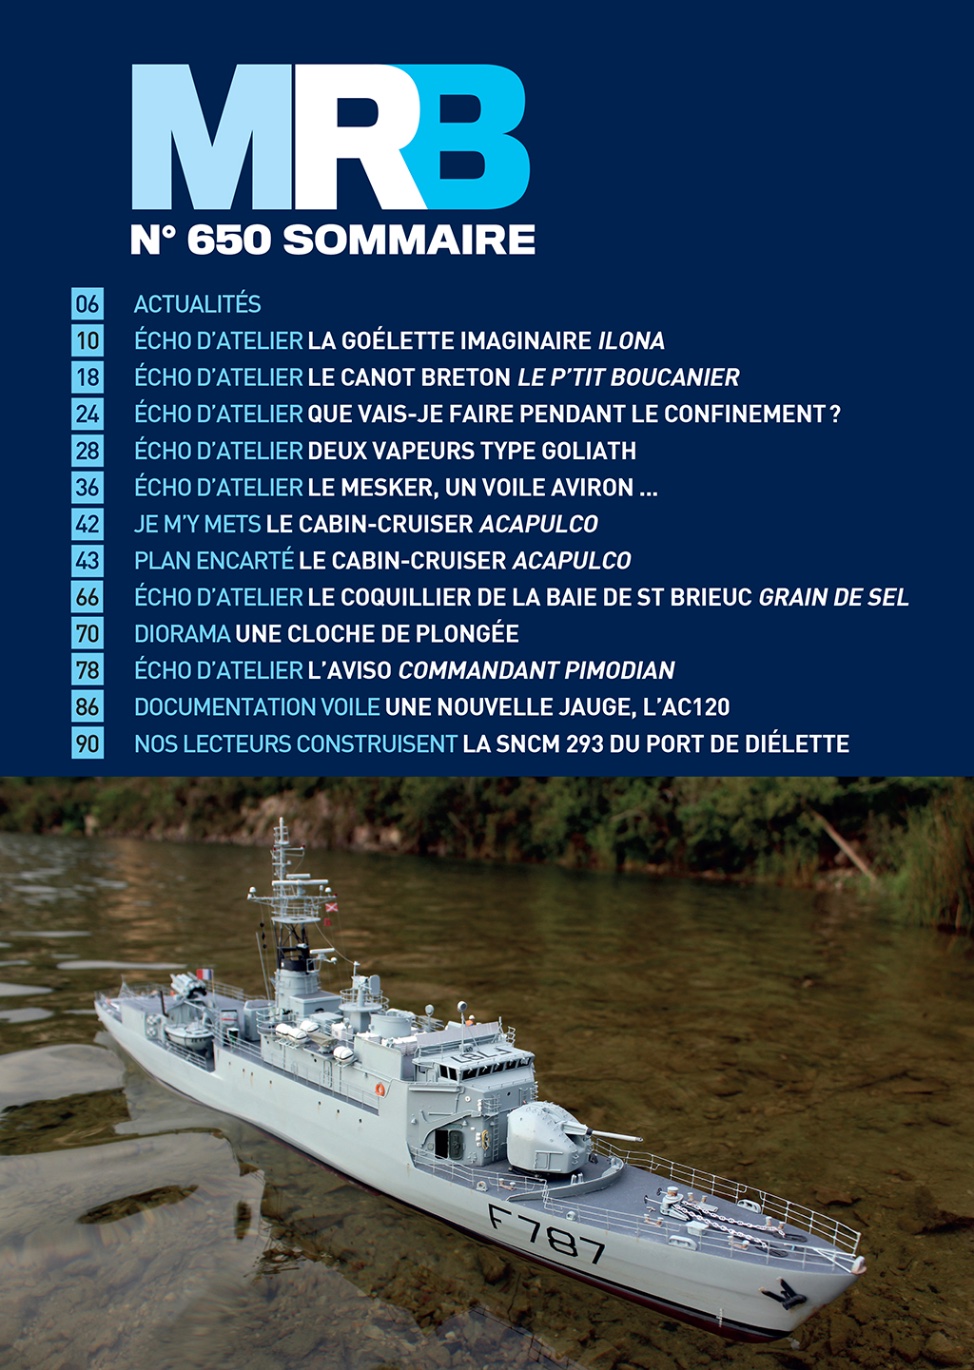 MRB 650 Sommaire.jpg